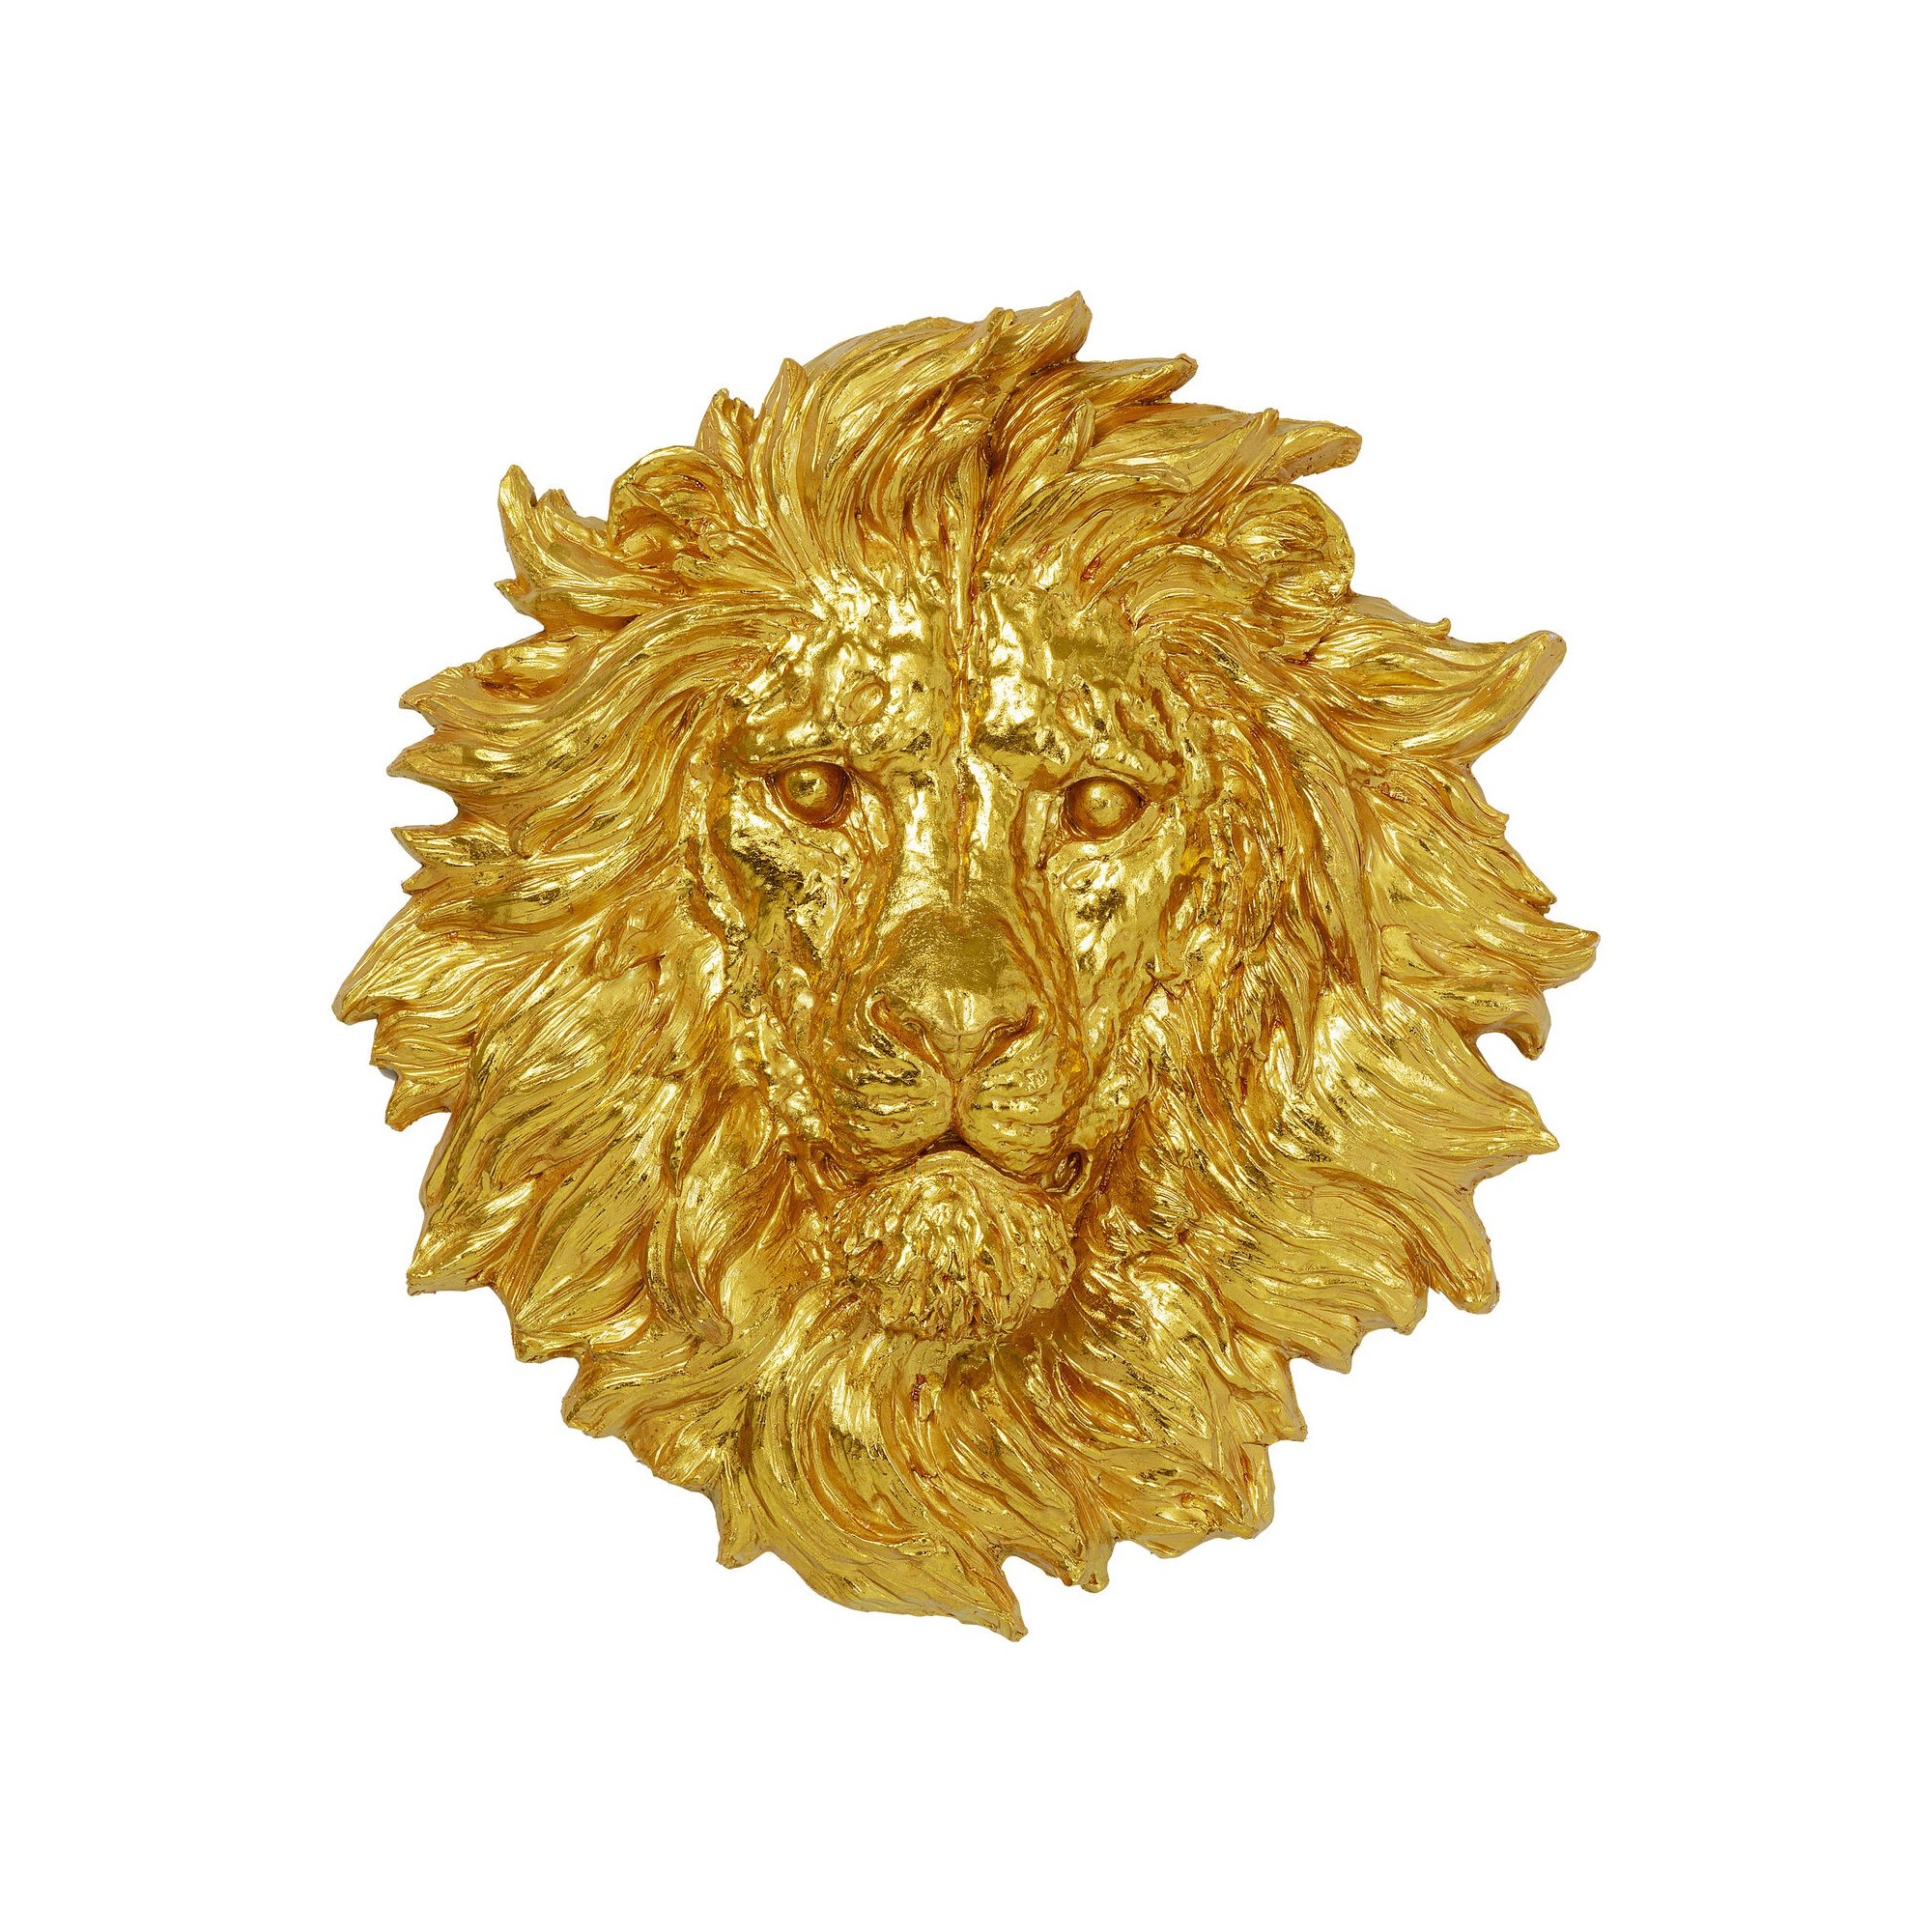 Objet mural Lion Head doré 90x100cm